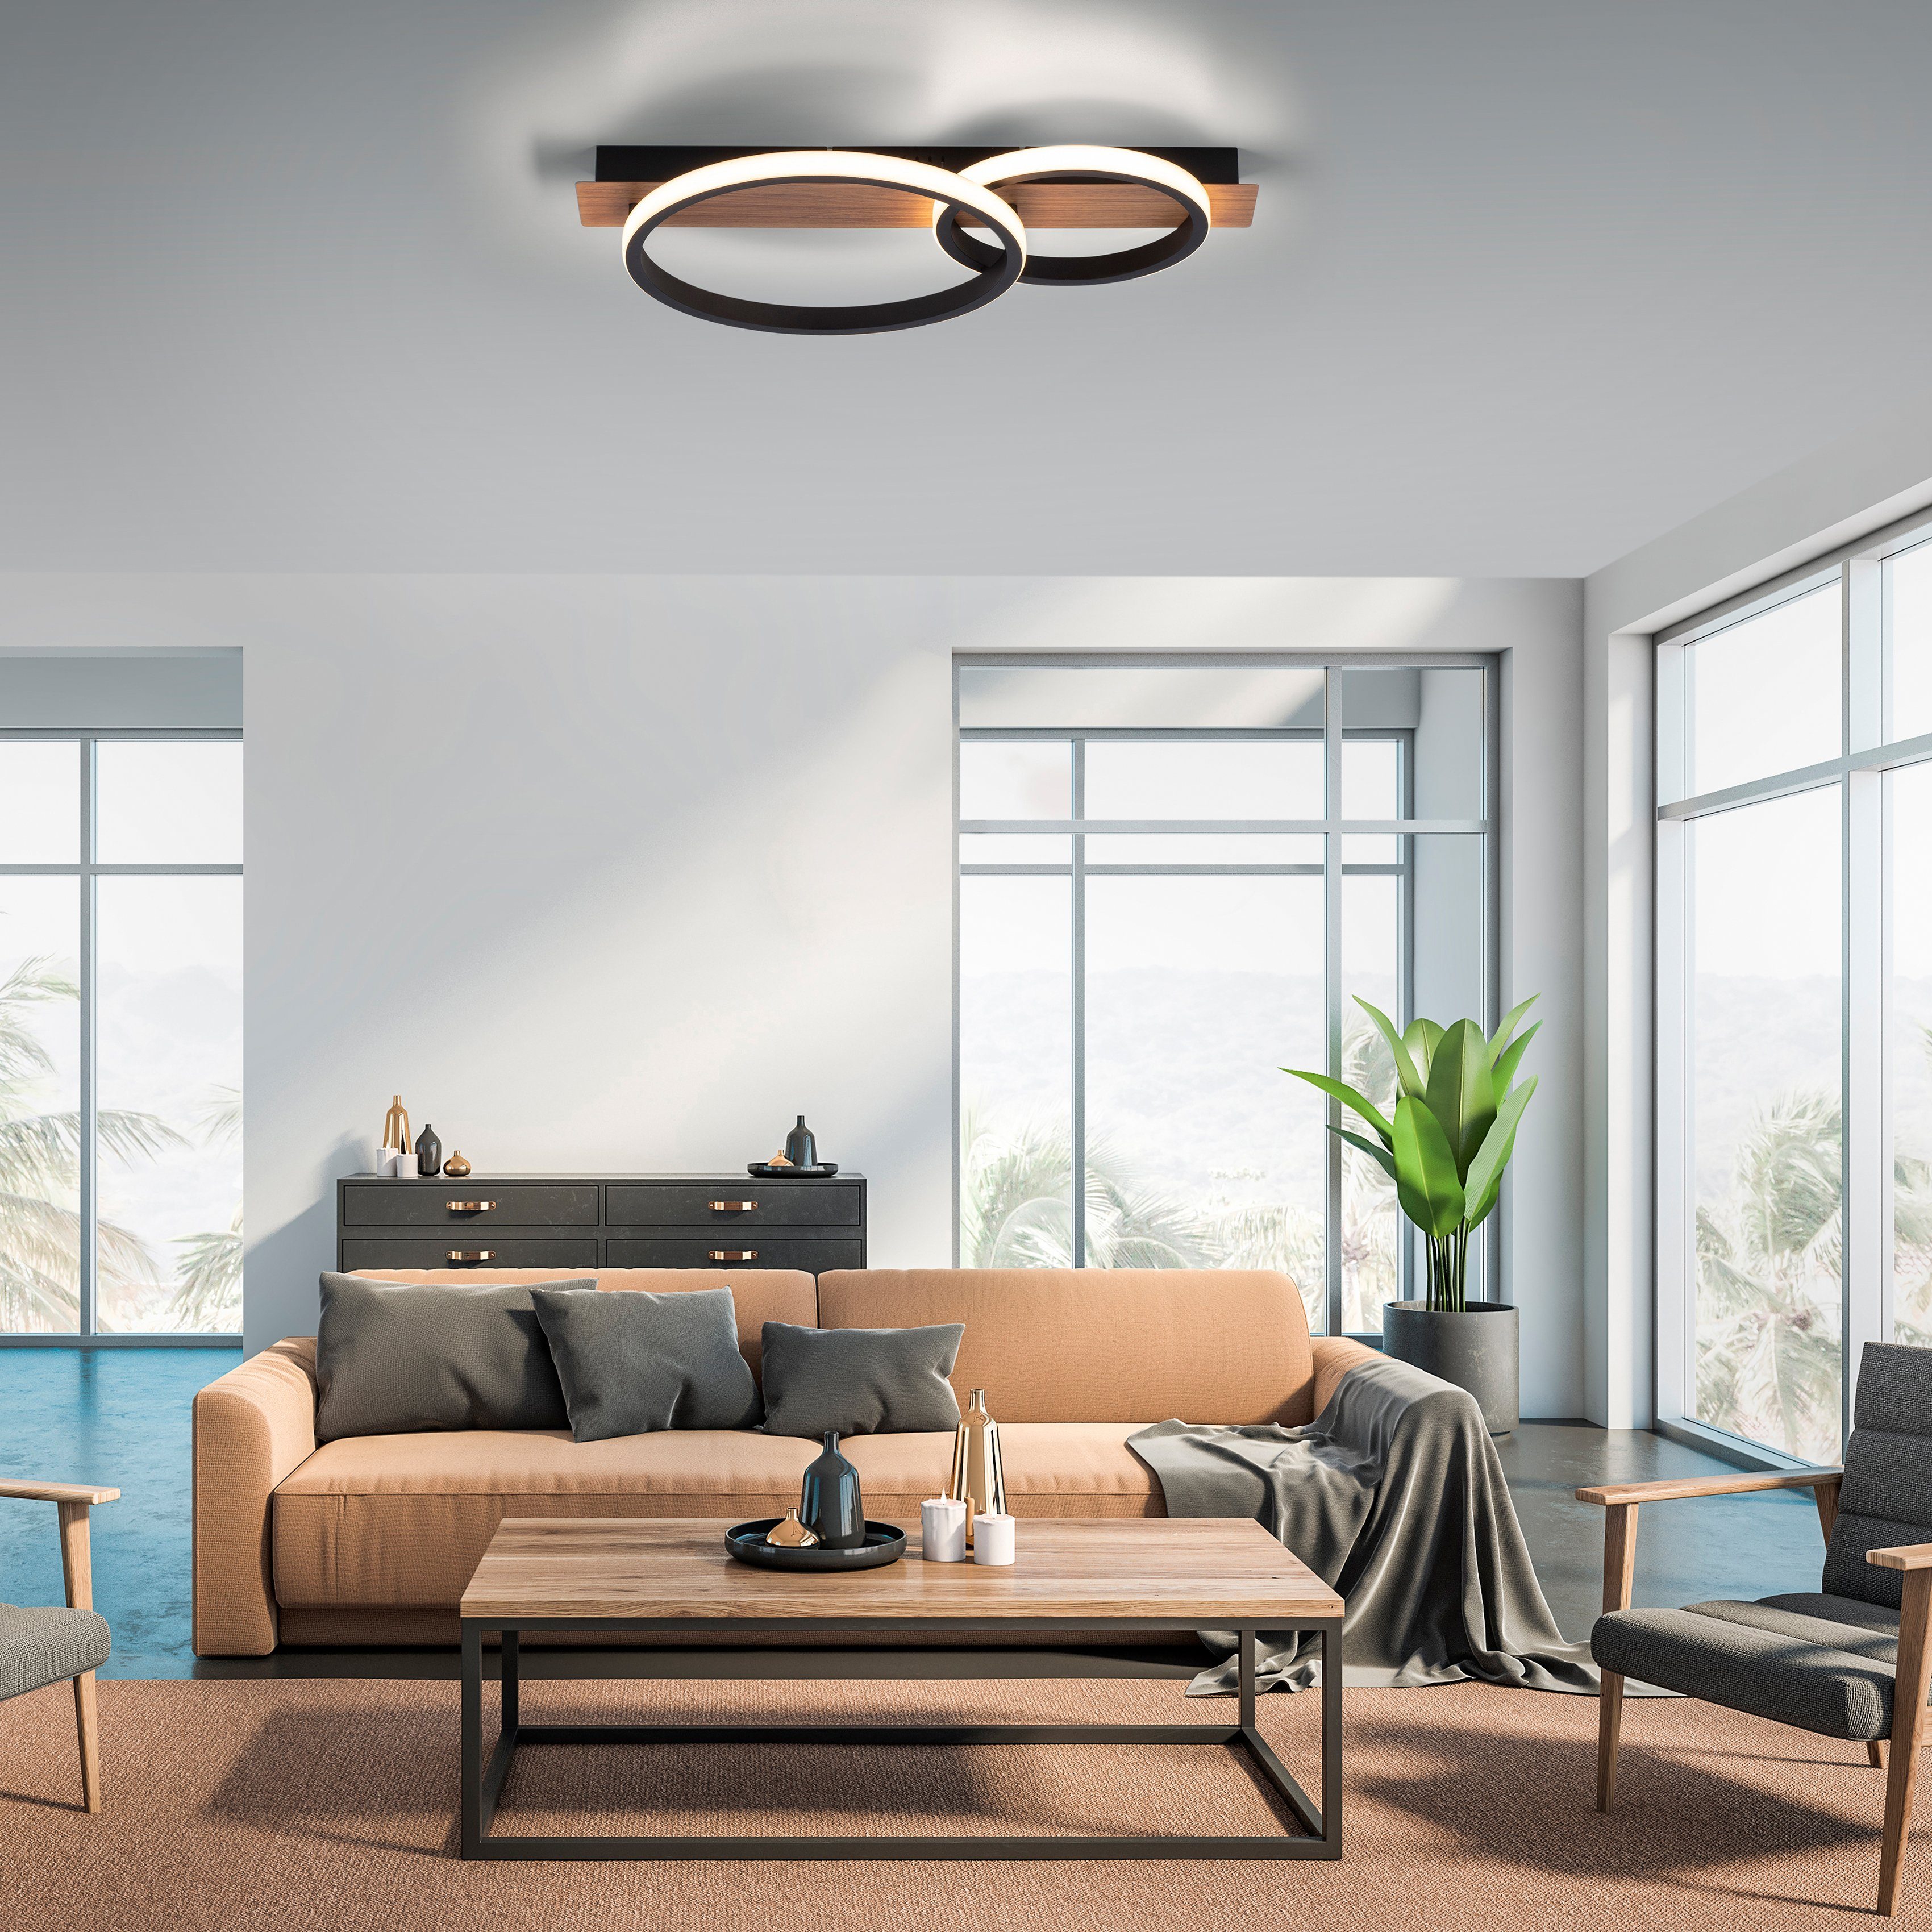 affaire Home warmweißes Warmweiß, Dekor Molay, Deckenlampe Deckenleuchte fest LED Holz LED Licht, integriert,